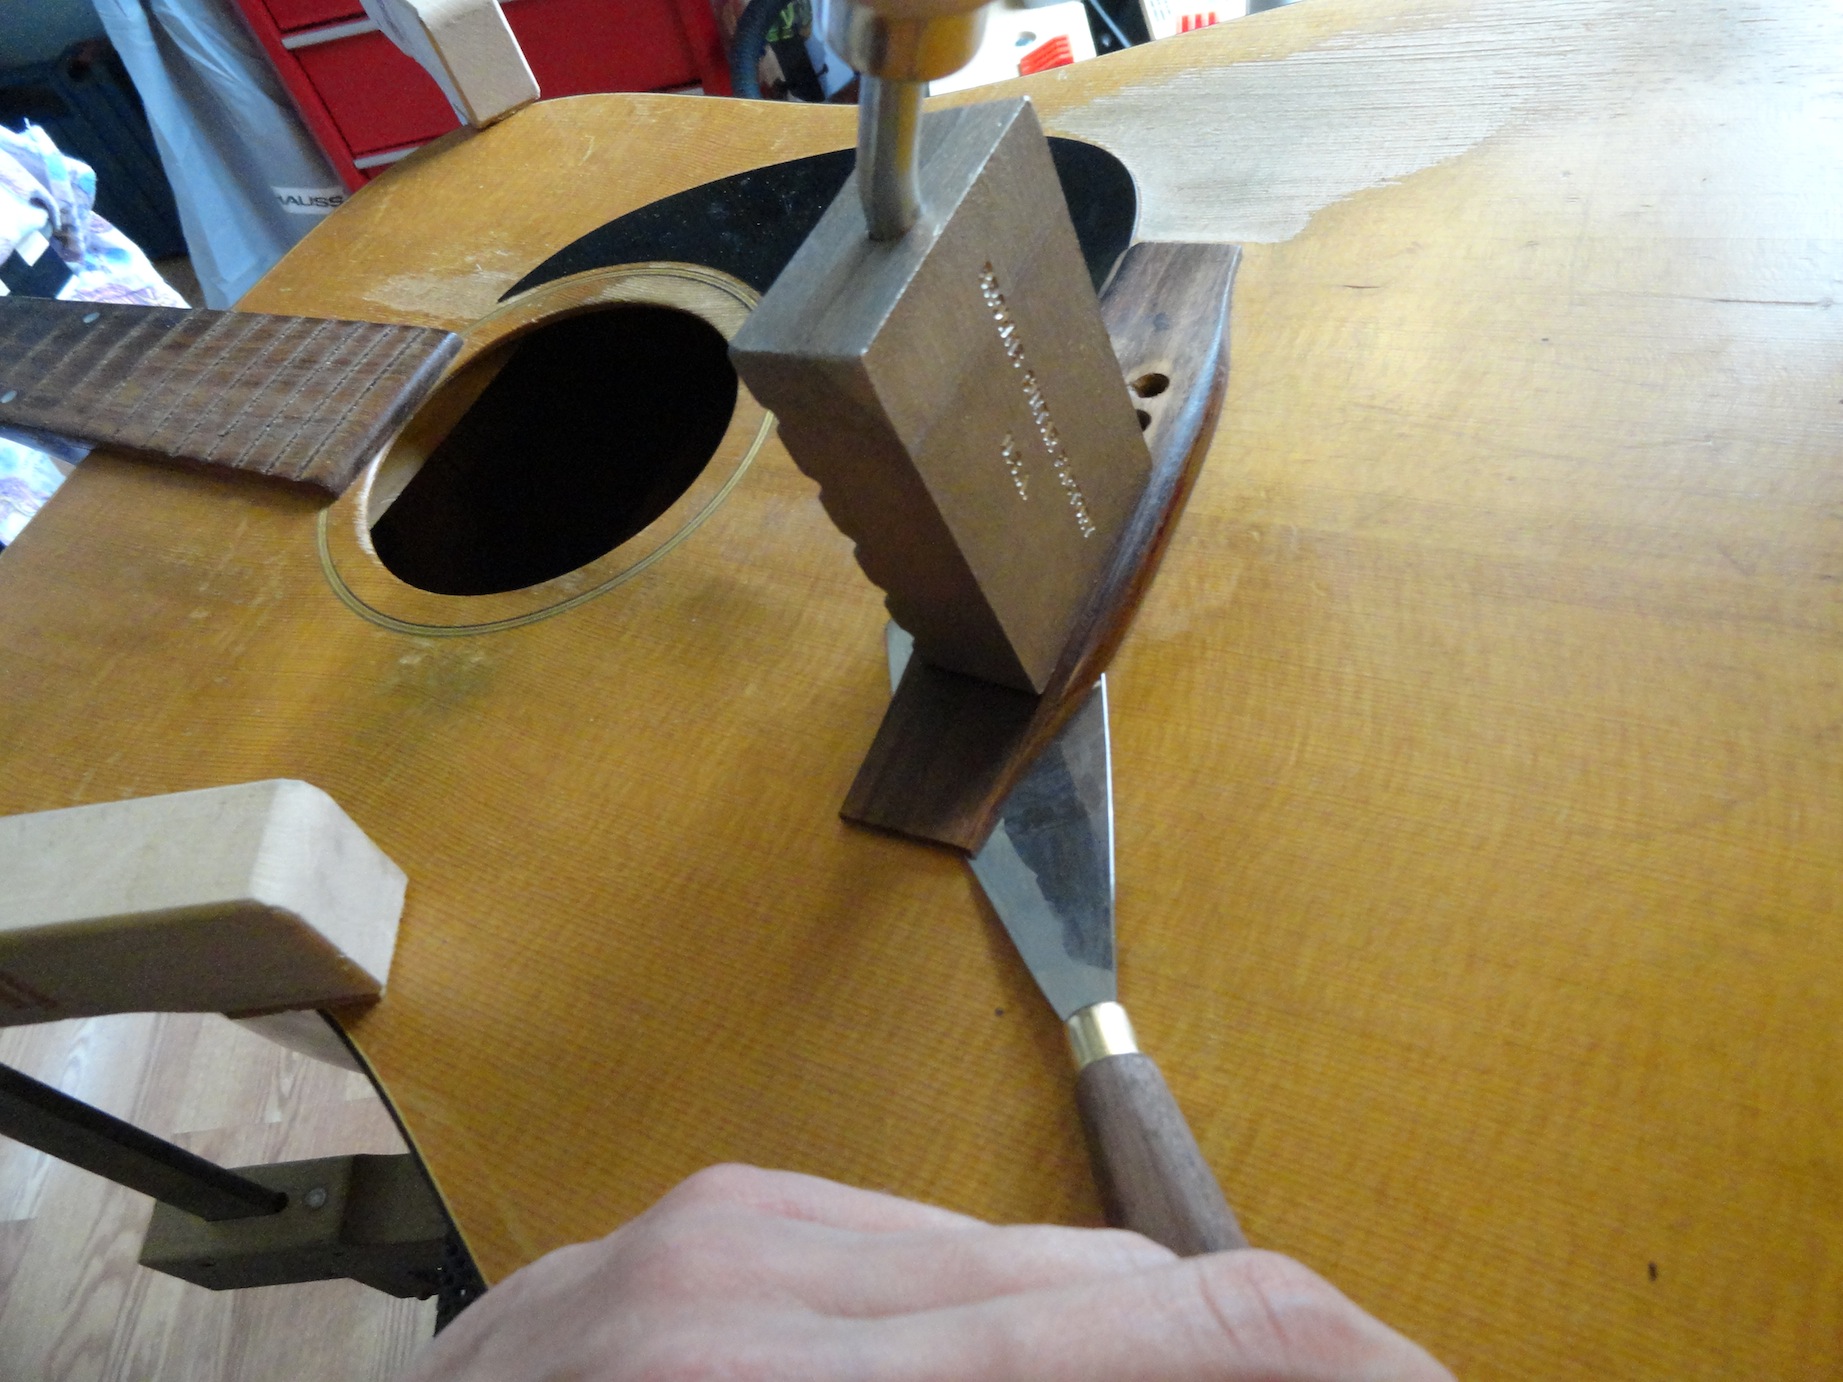 Repairing an acoustic guitar bridge - removing bridge